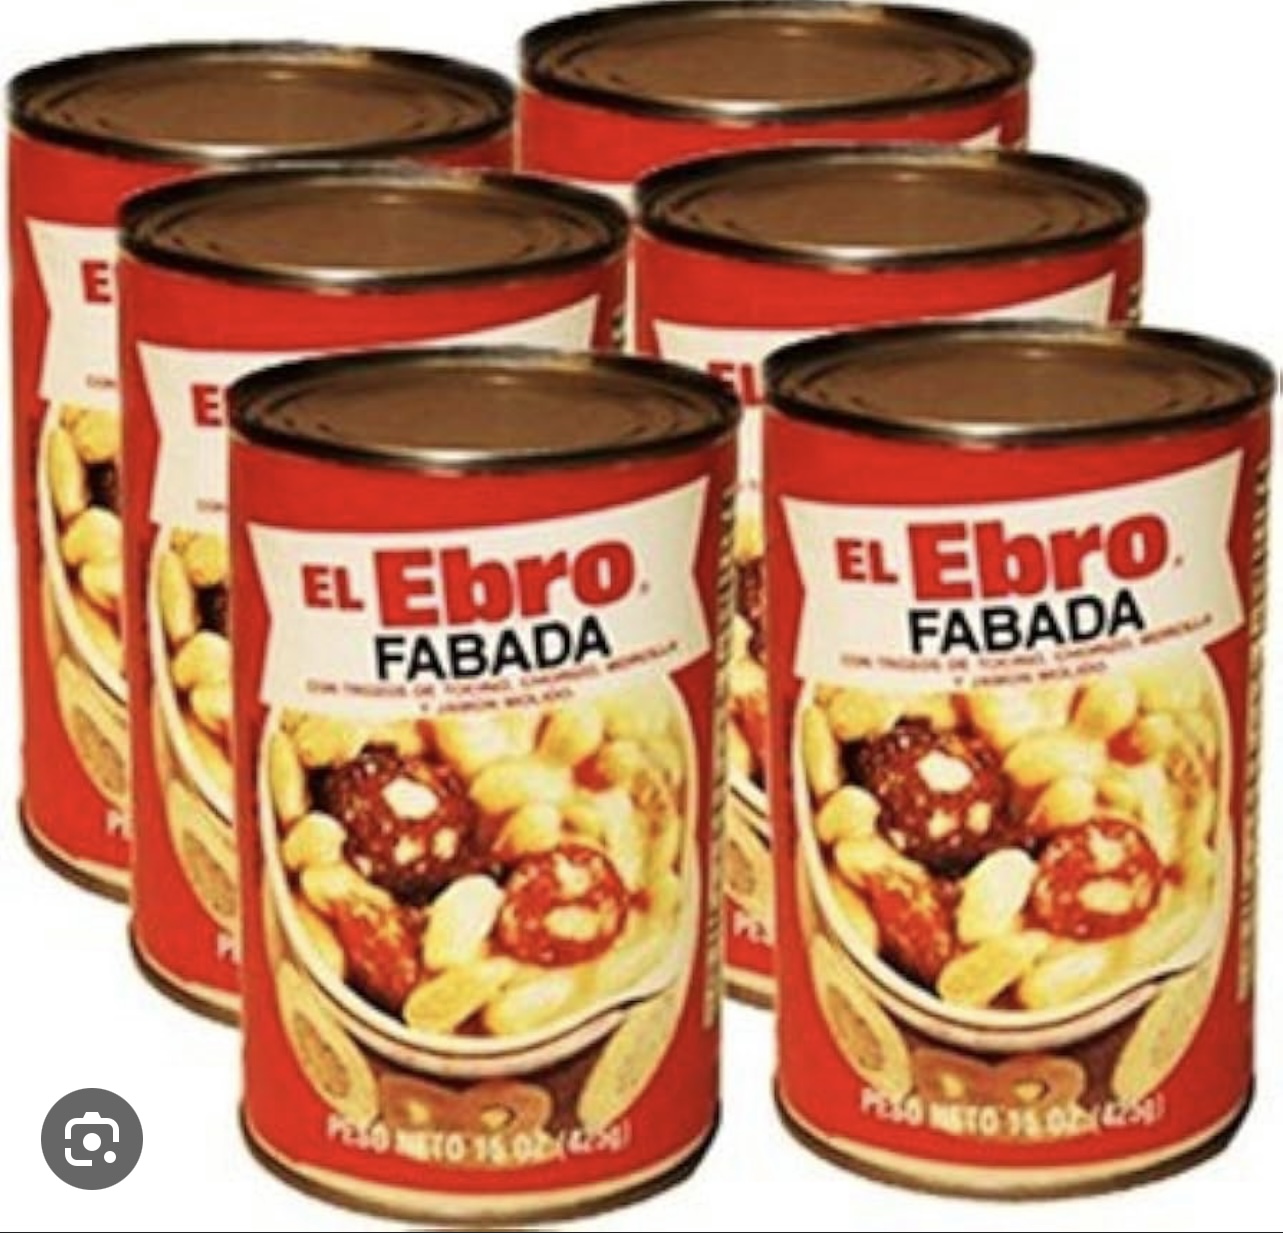 El Ebro Fabada Soup, 15 oz - image 5 of 6